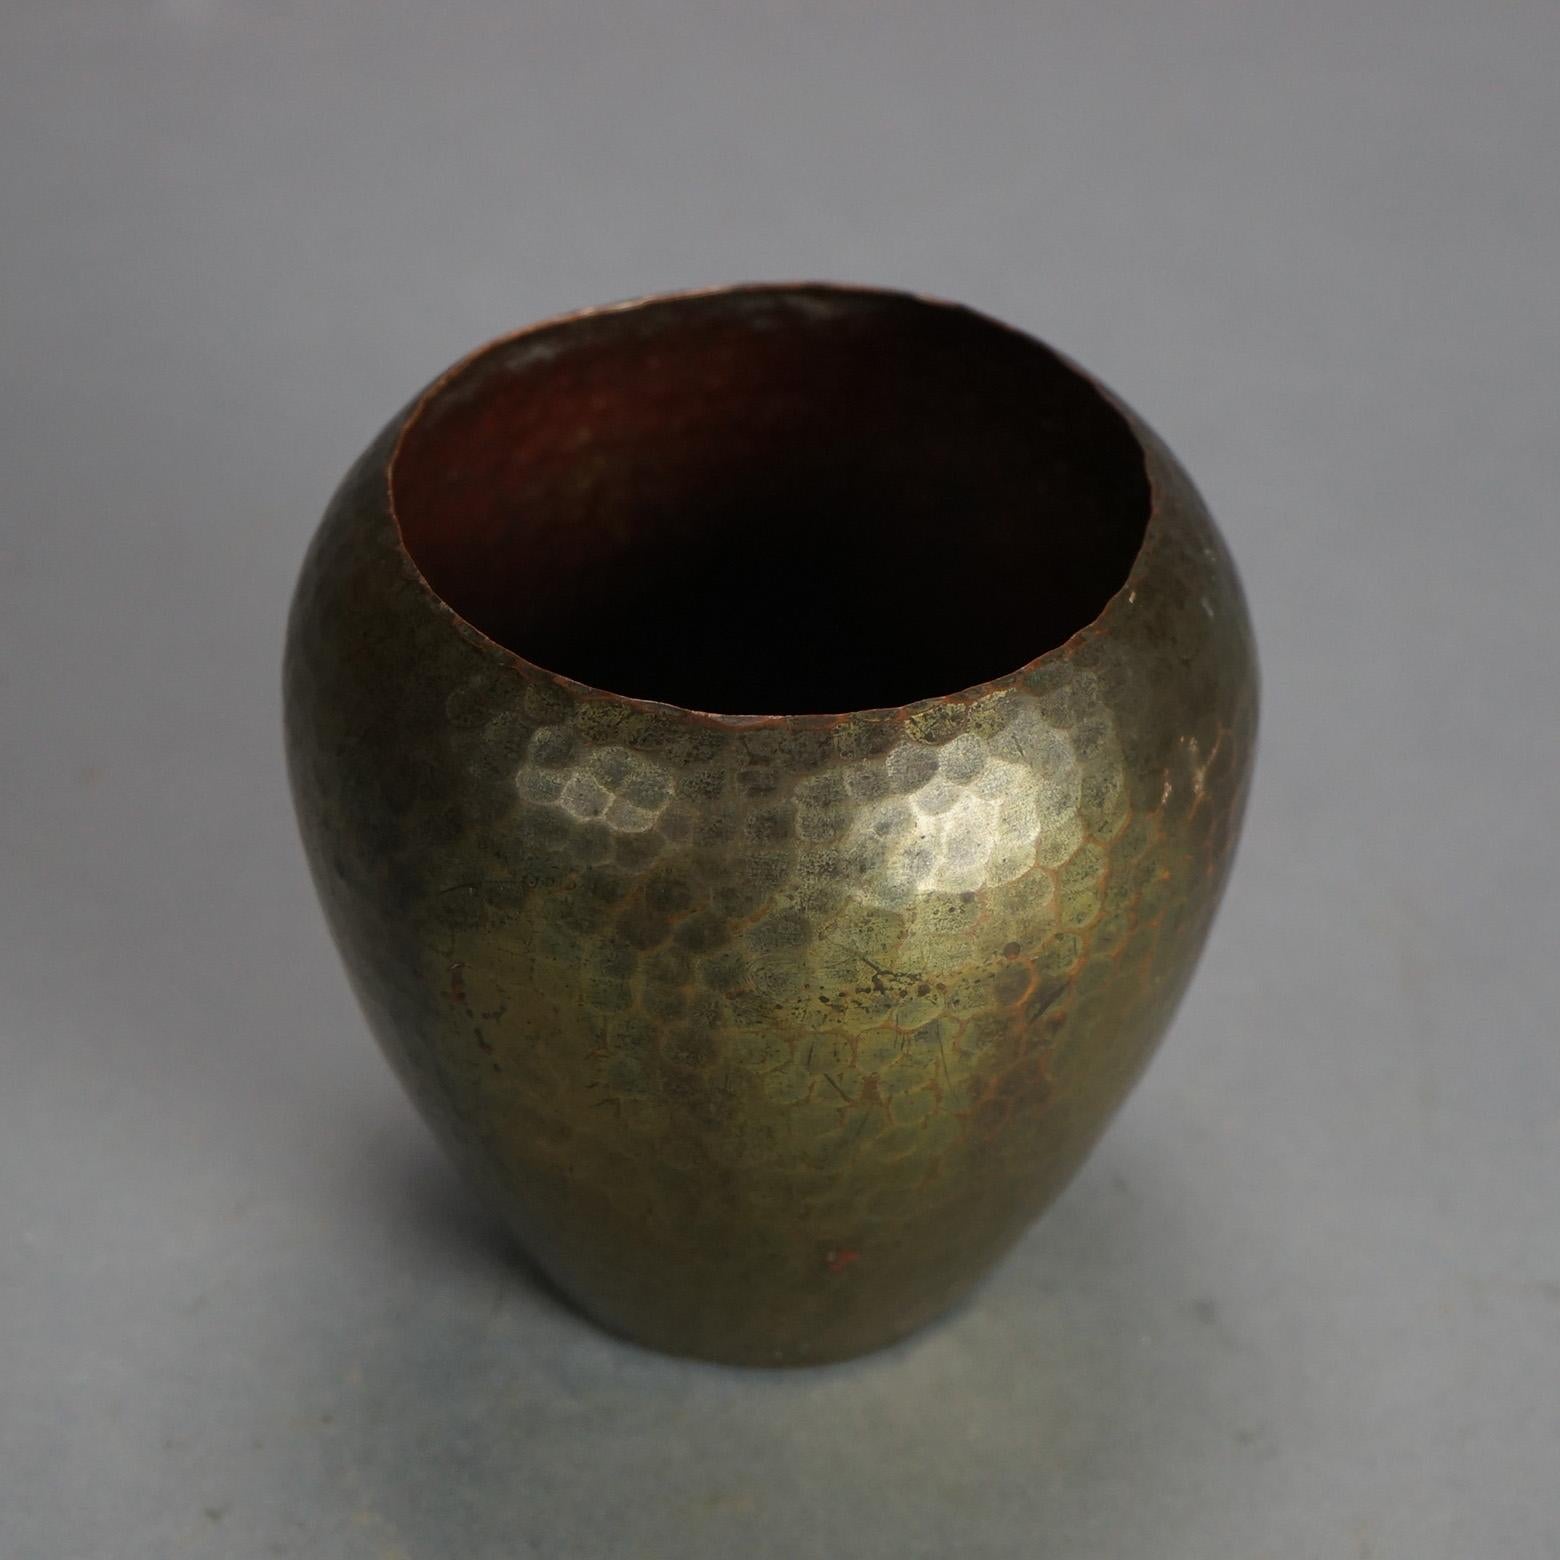 Vase ancien en cuivre martelé à la main de Roycroft Arts & Crafts C1910

Dimensions - 4,5 